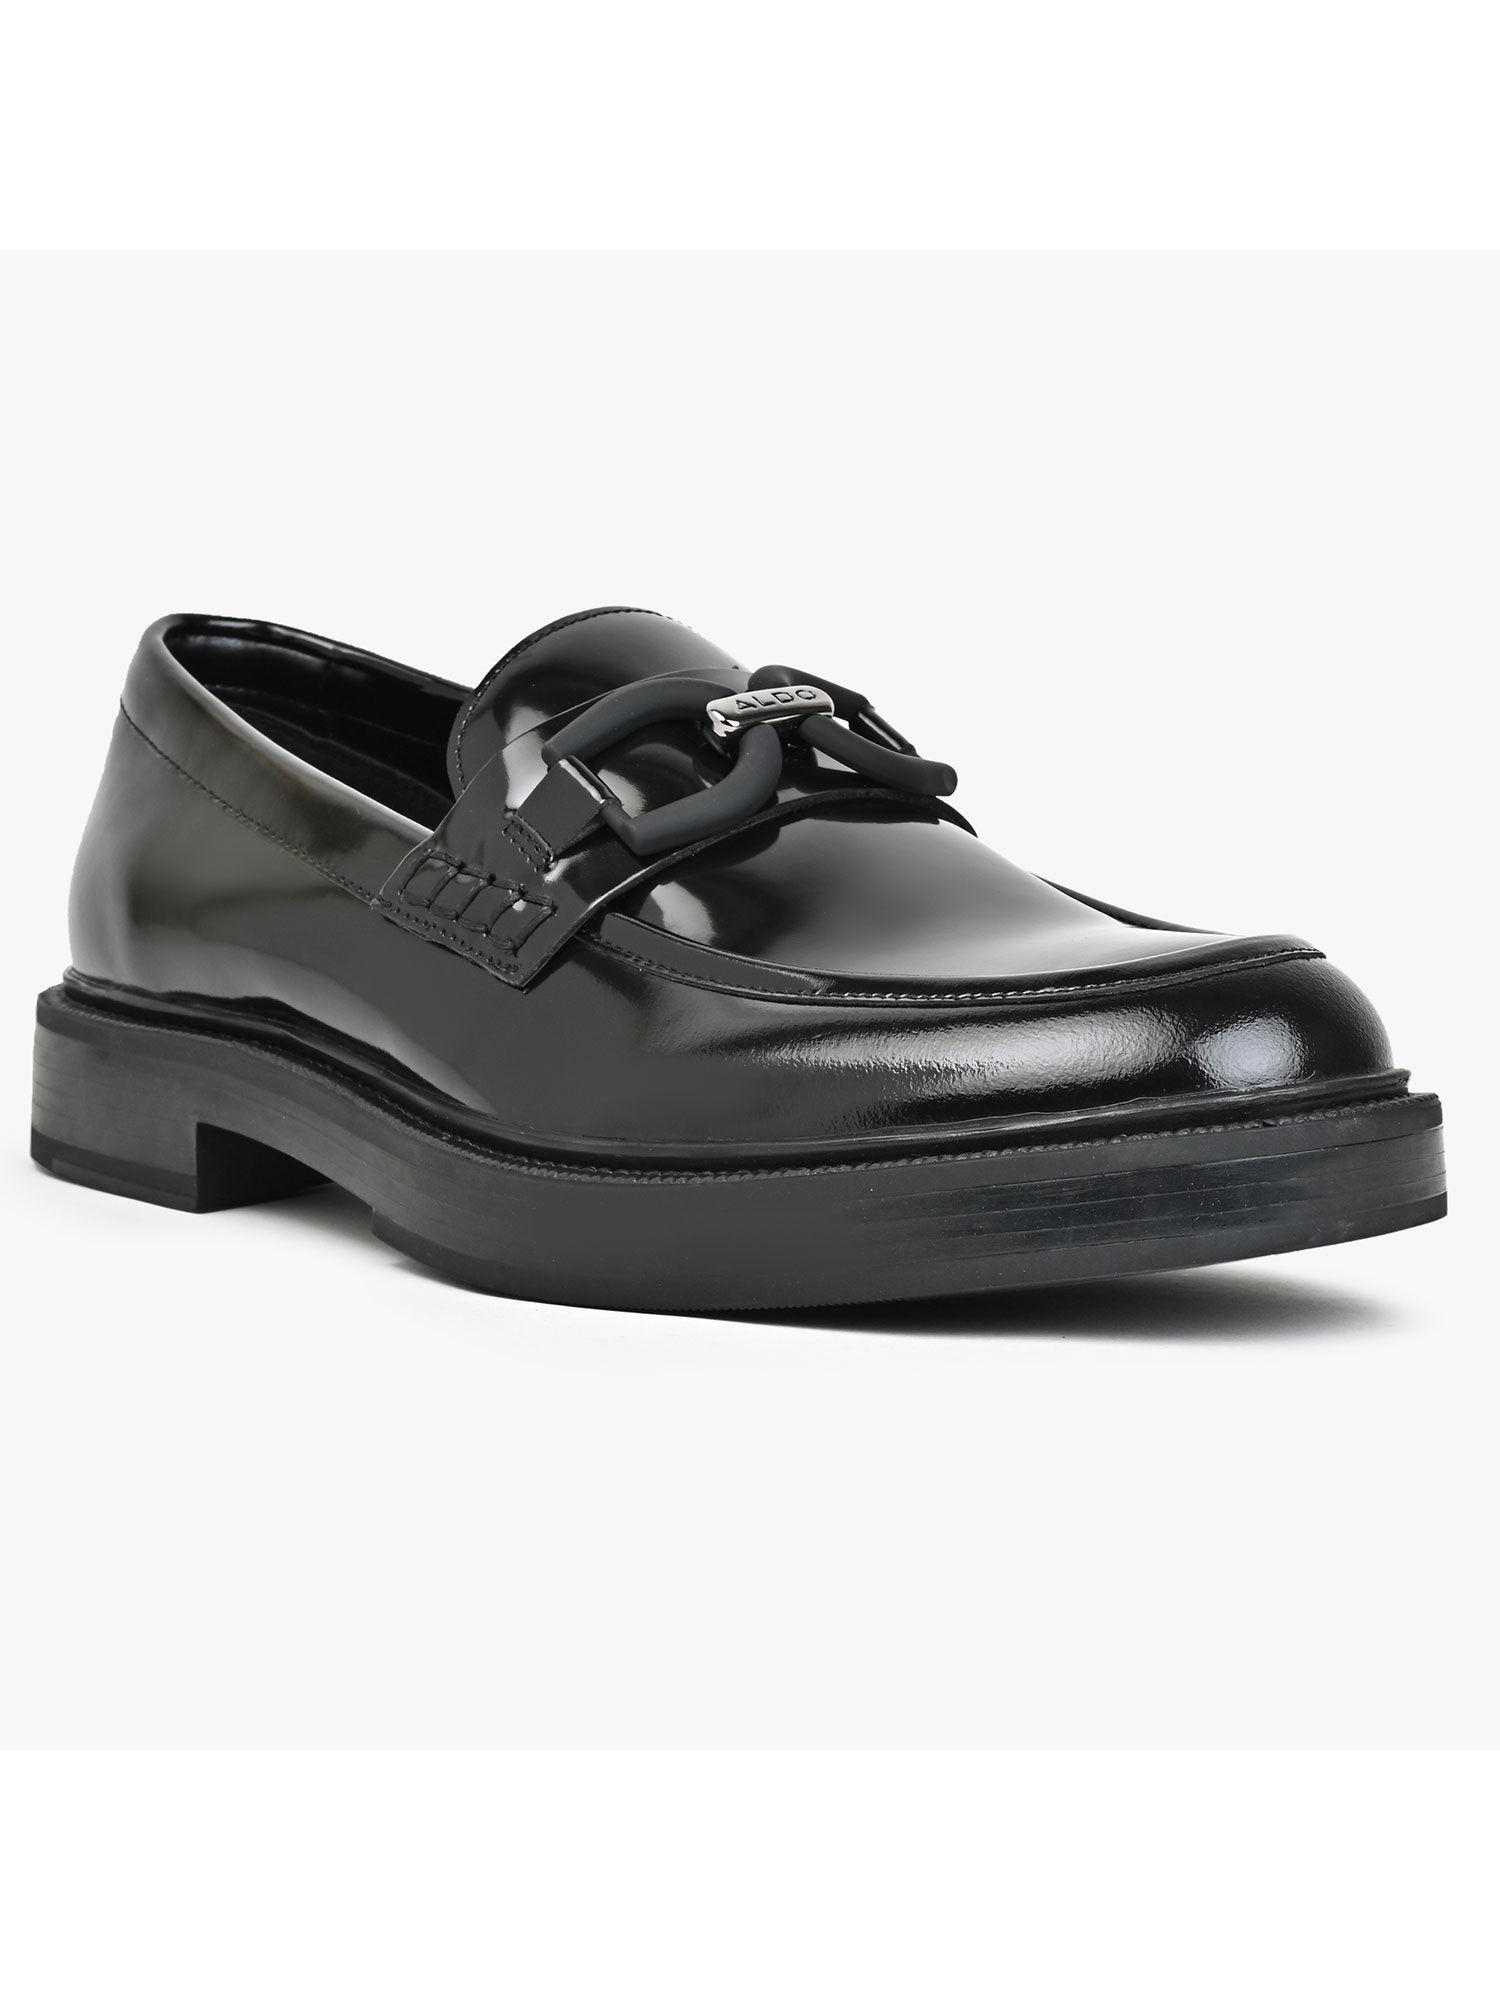 men formal loafers black